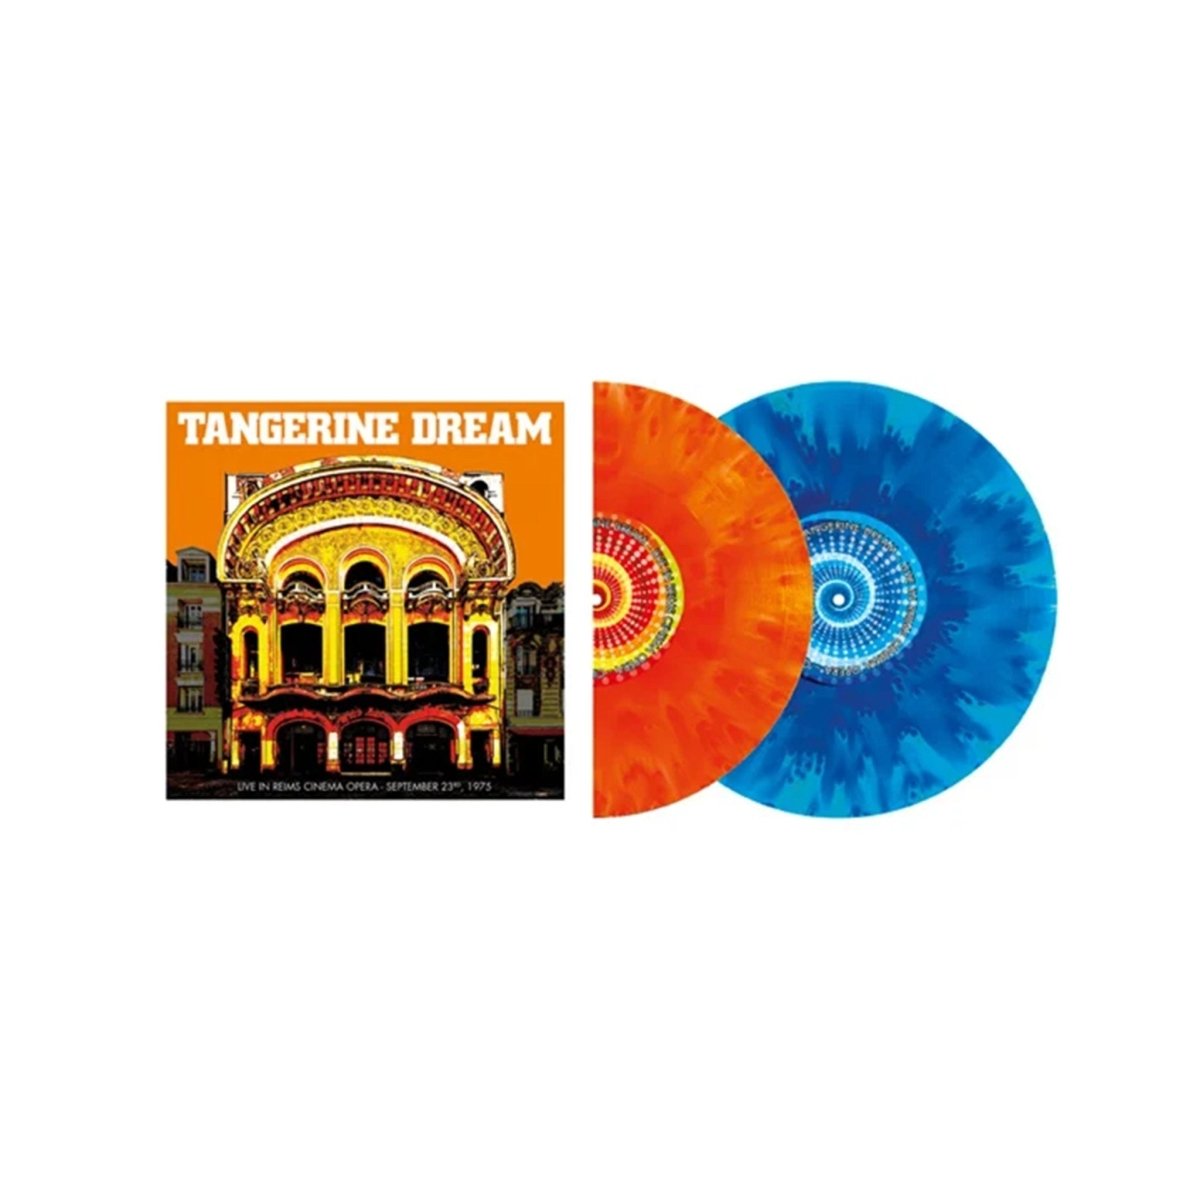 Tangerine Dream - Live In Reims Cinema Opera, September 23rd, 1975 Records & LPs Vinyl